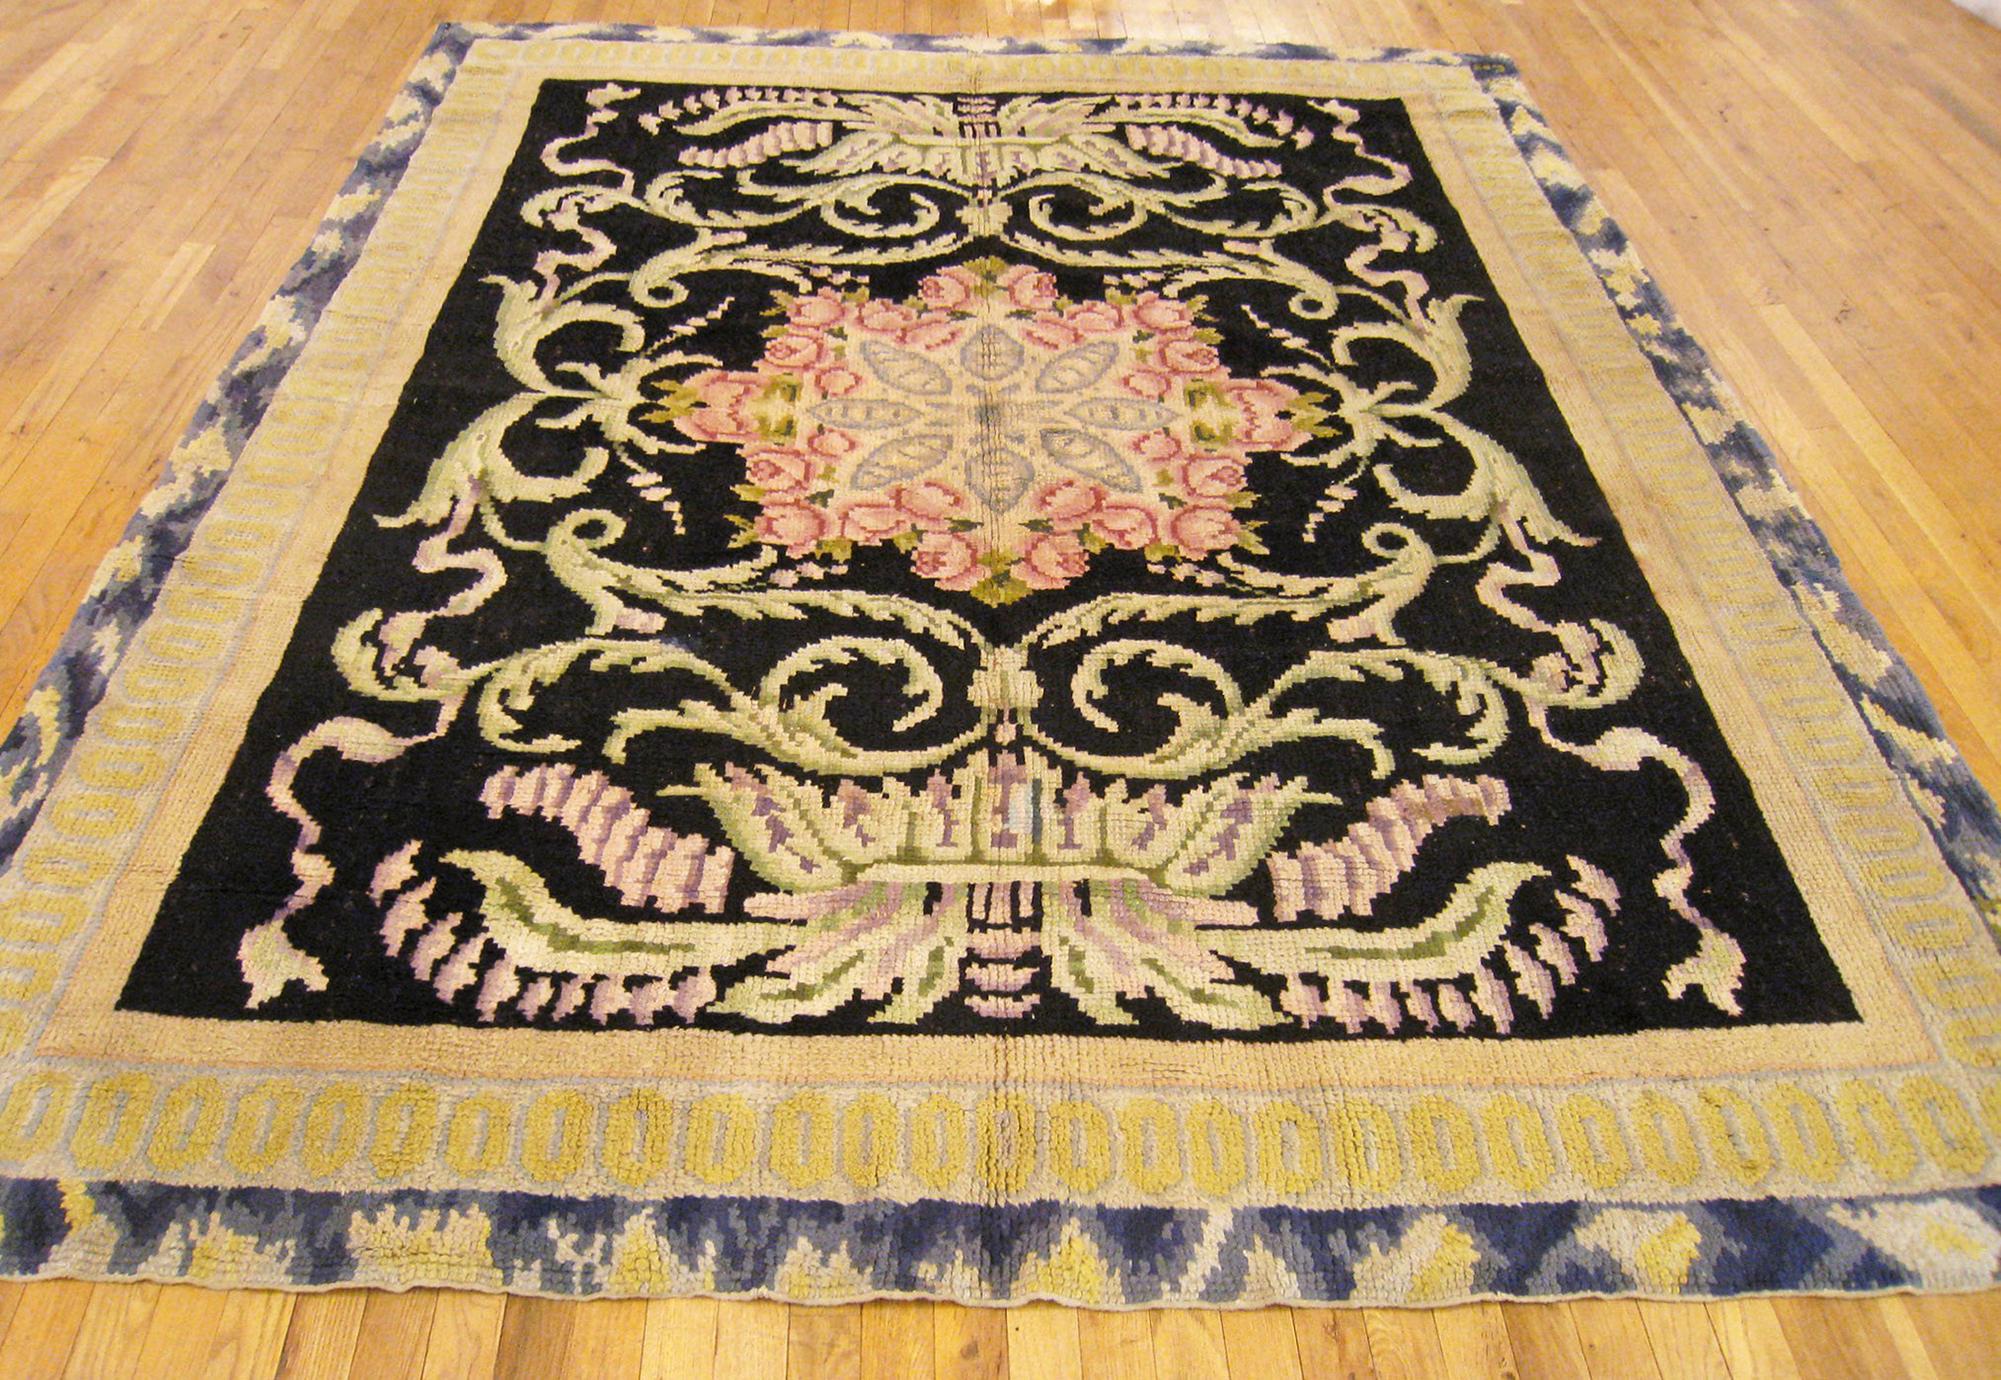 Spanischer Vintage Savonnerie-Teppich, Zimmergröße, um 1932

Ein einzigartiger europäischer Savonnerie-Oriental-Teppich, handgeknüpft mit kurzem Wollflor. Dieser schöne Teppich zeigt ein zentrales Medaillon auf dem schwarzen Grundfeld mit einer